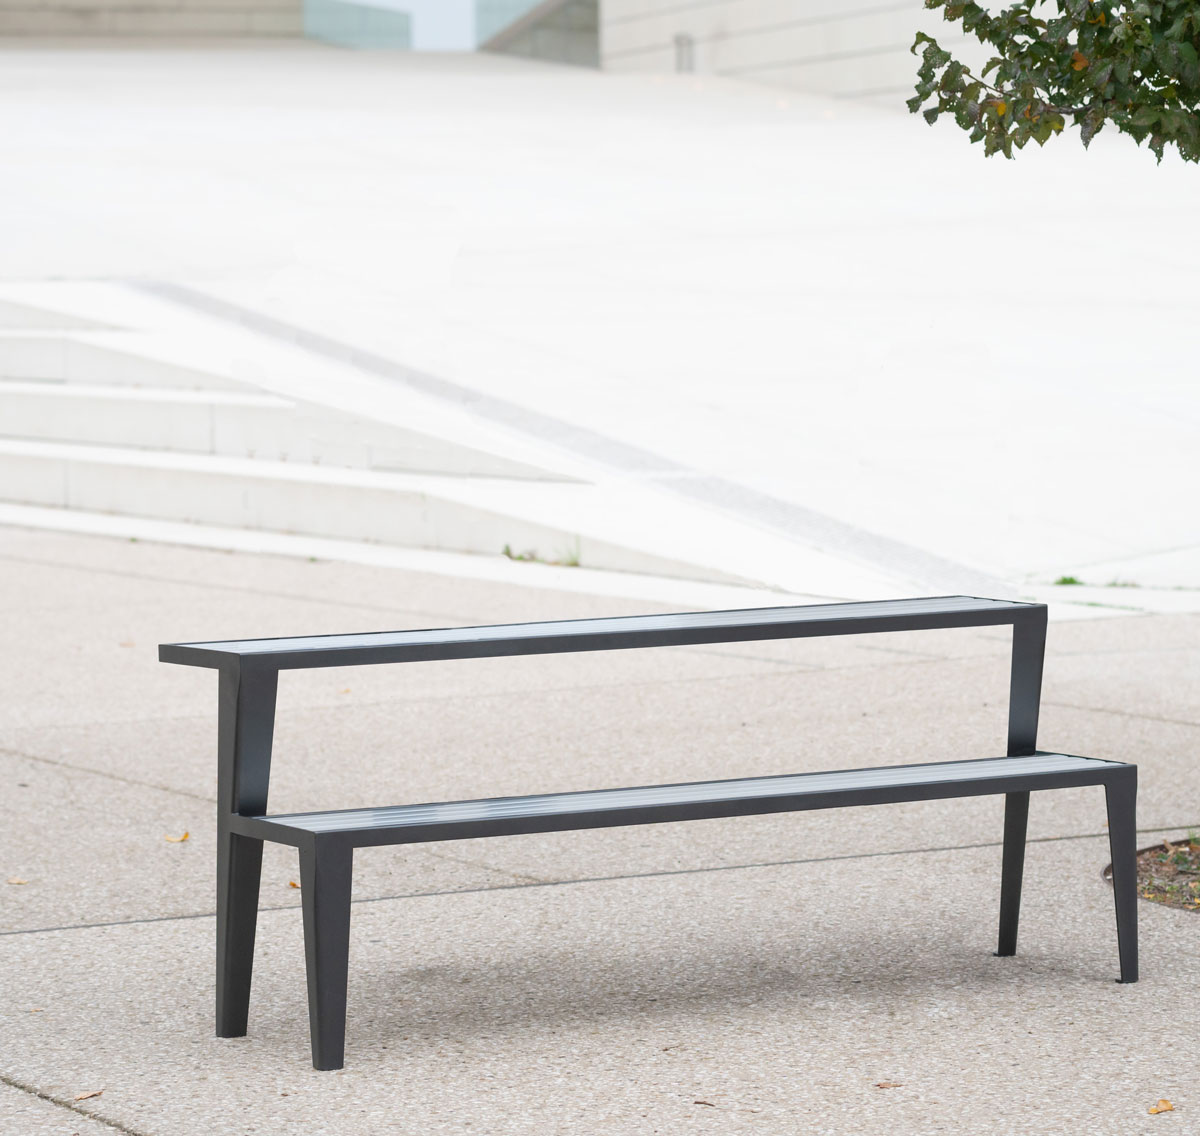 Table banc Chicago aluminium conçu et fabriqué par Aréa mobilier urbain